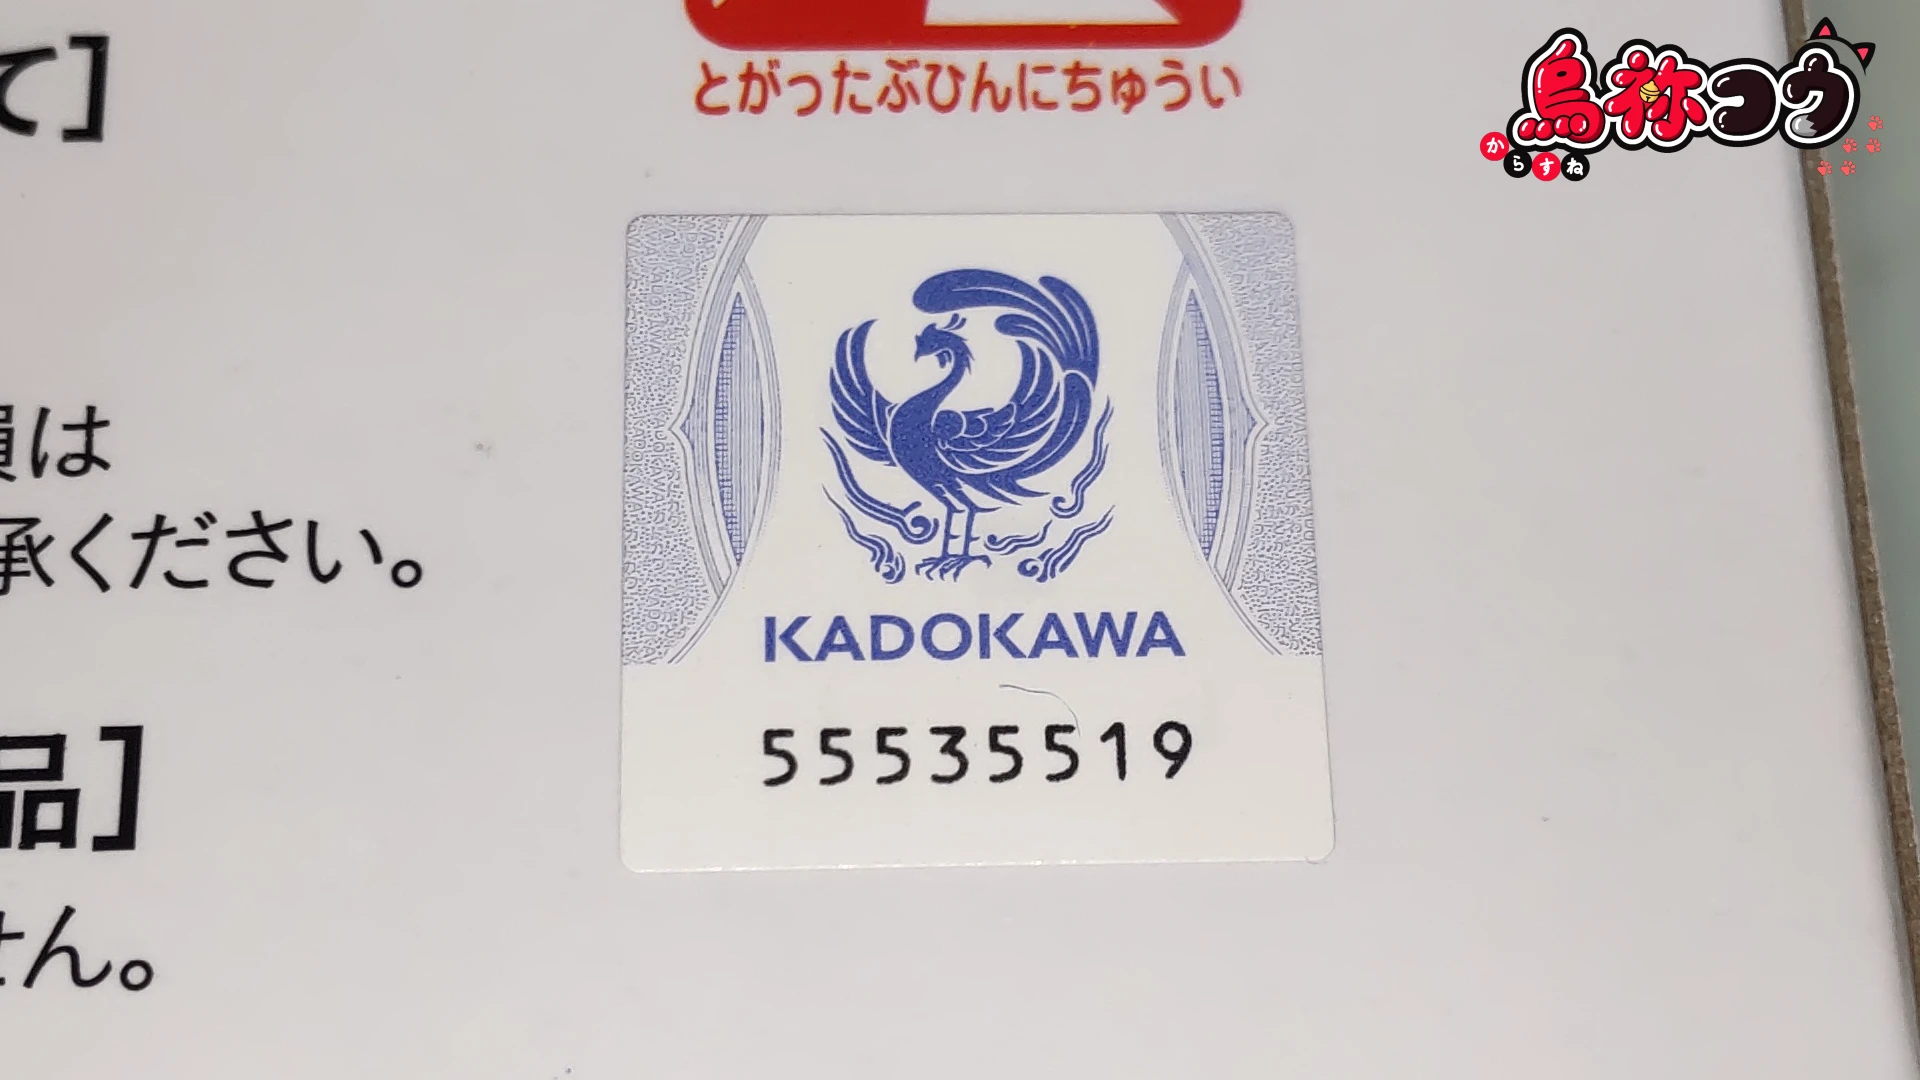 Re:ゼロから始める異世界生活 Luminasta “レム” -にゃつの日- のプライズフィギュアのパッケージに貼られた KADOKAWA の版権承諾シールです